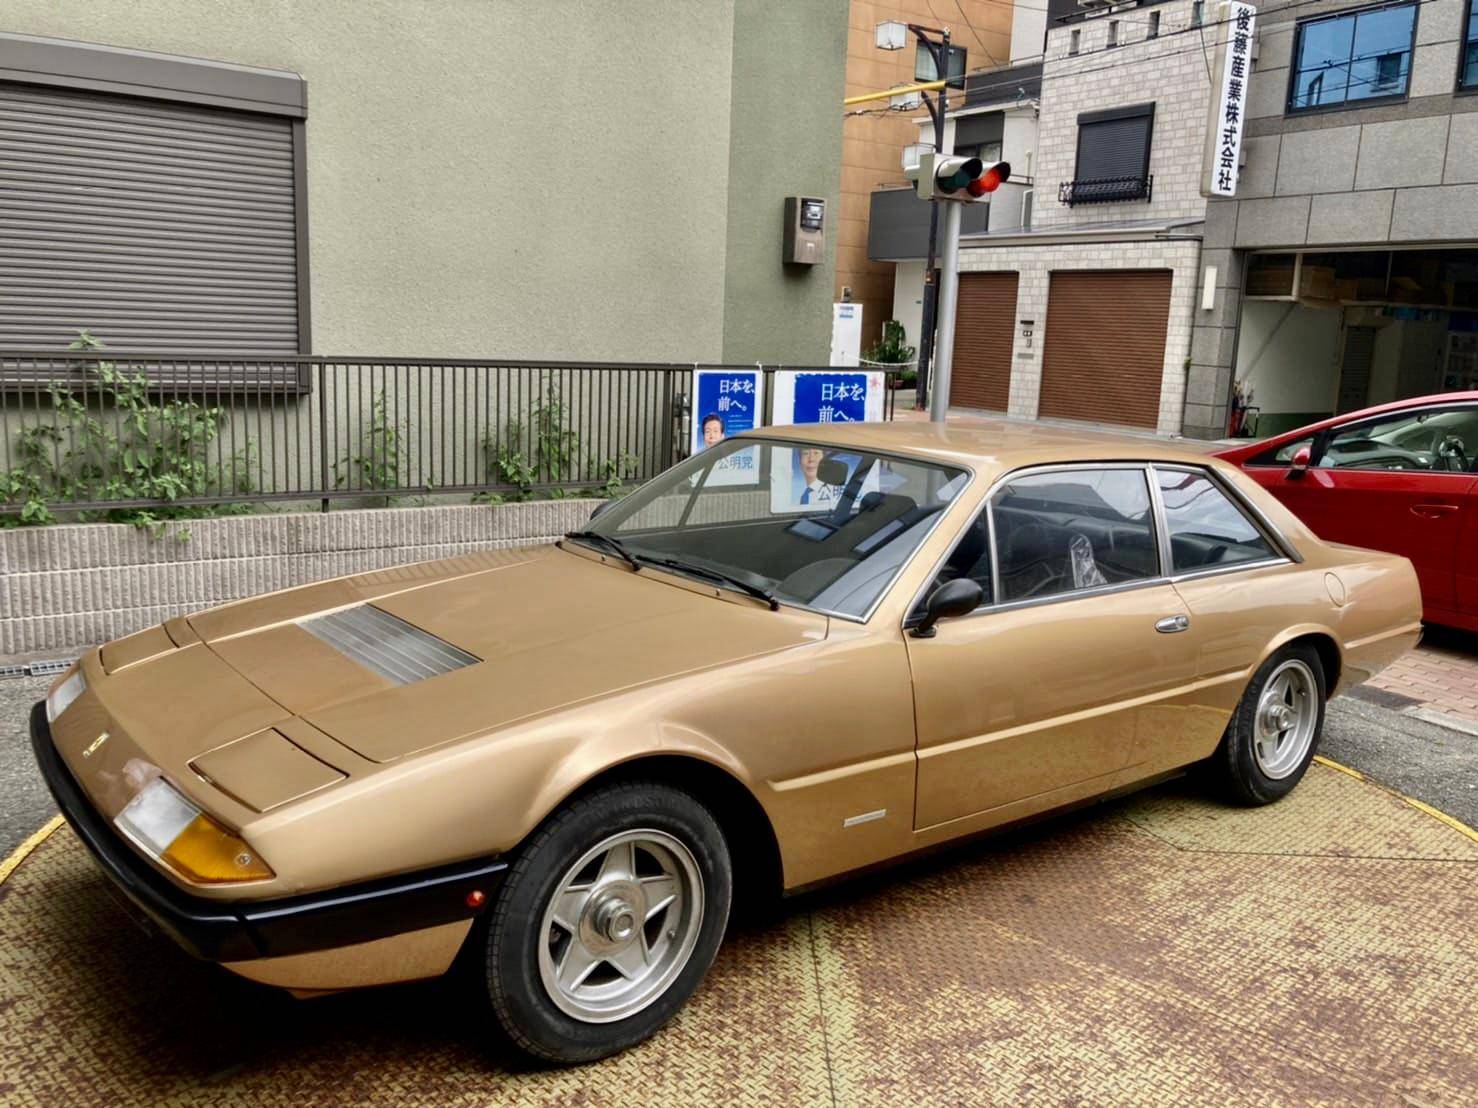 1974 Ferrari 365 GTA 2+2 ex Rotterdam € 69.365.- / ex L.A. US$ 72.365.-